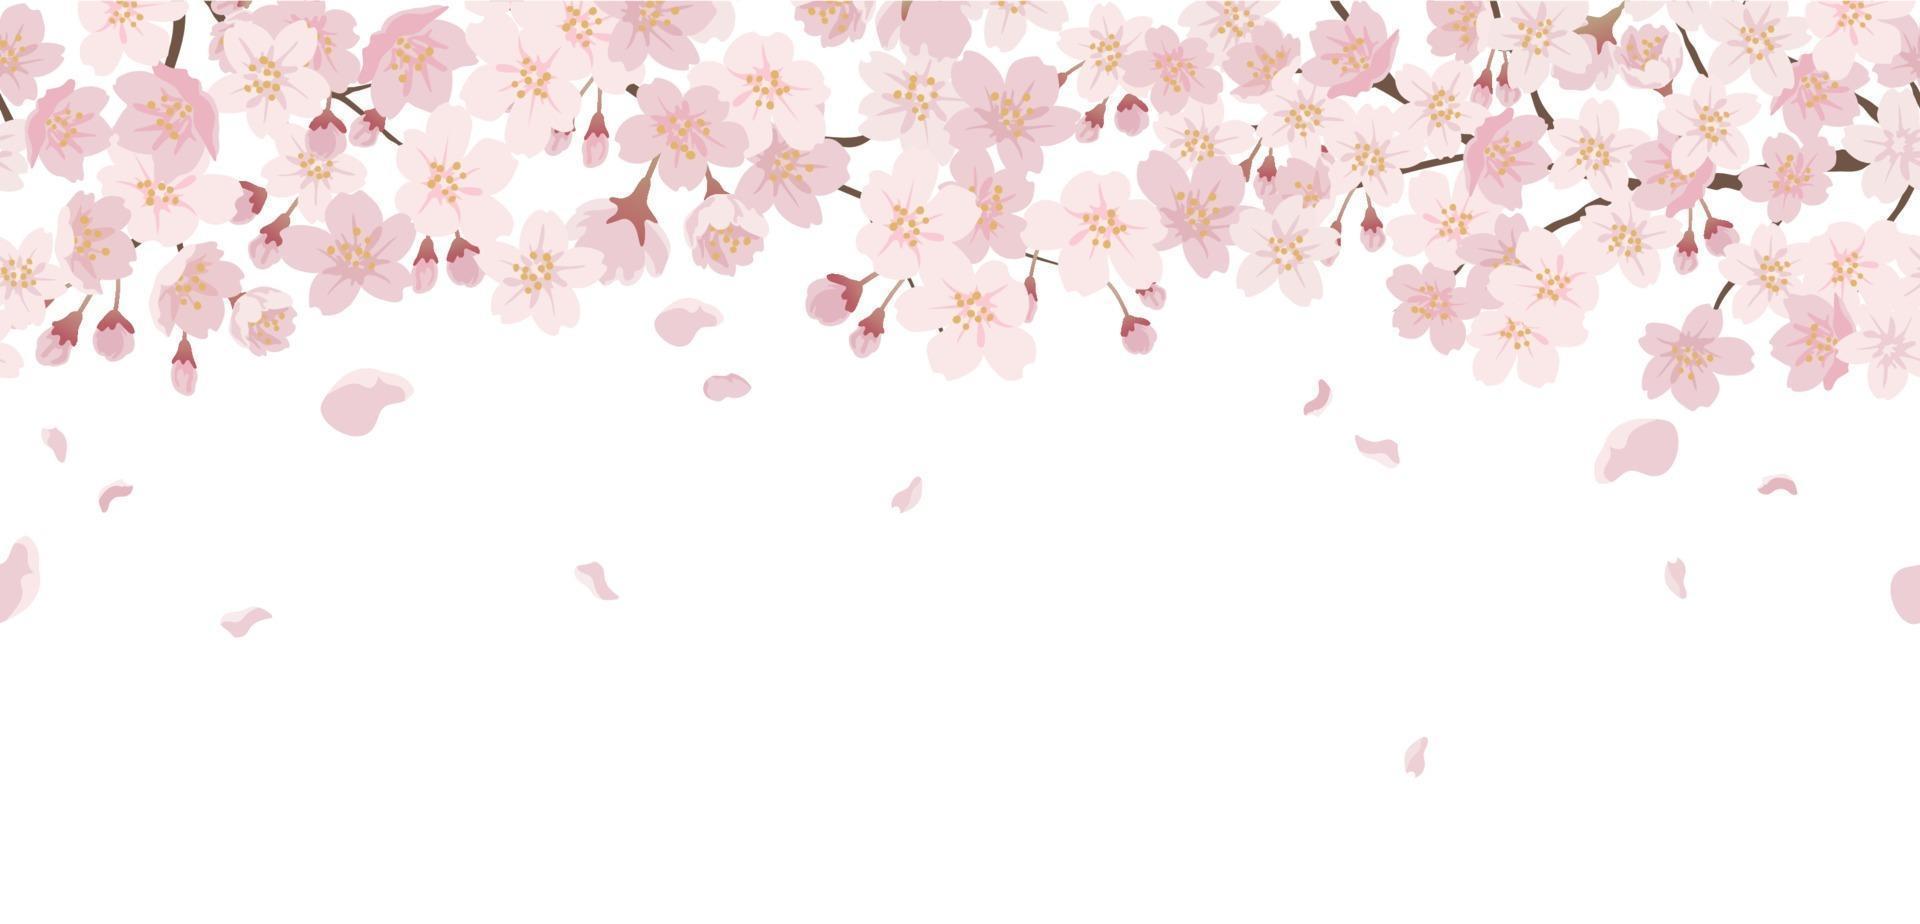 nahtloser Blumenhintergrund mit Kirschblüten in voller Blüte lokalisiert auf einem weißen Hintergrund. horizontal wiederholbar. vektor